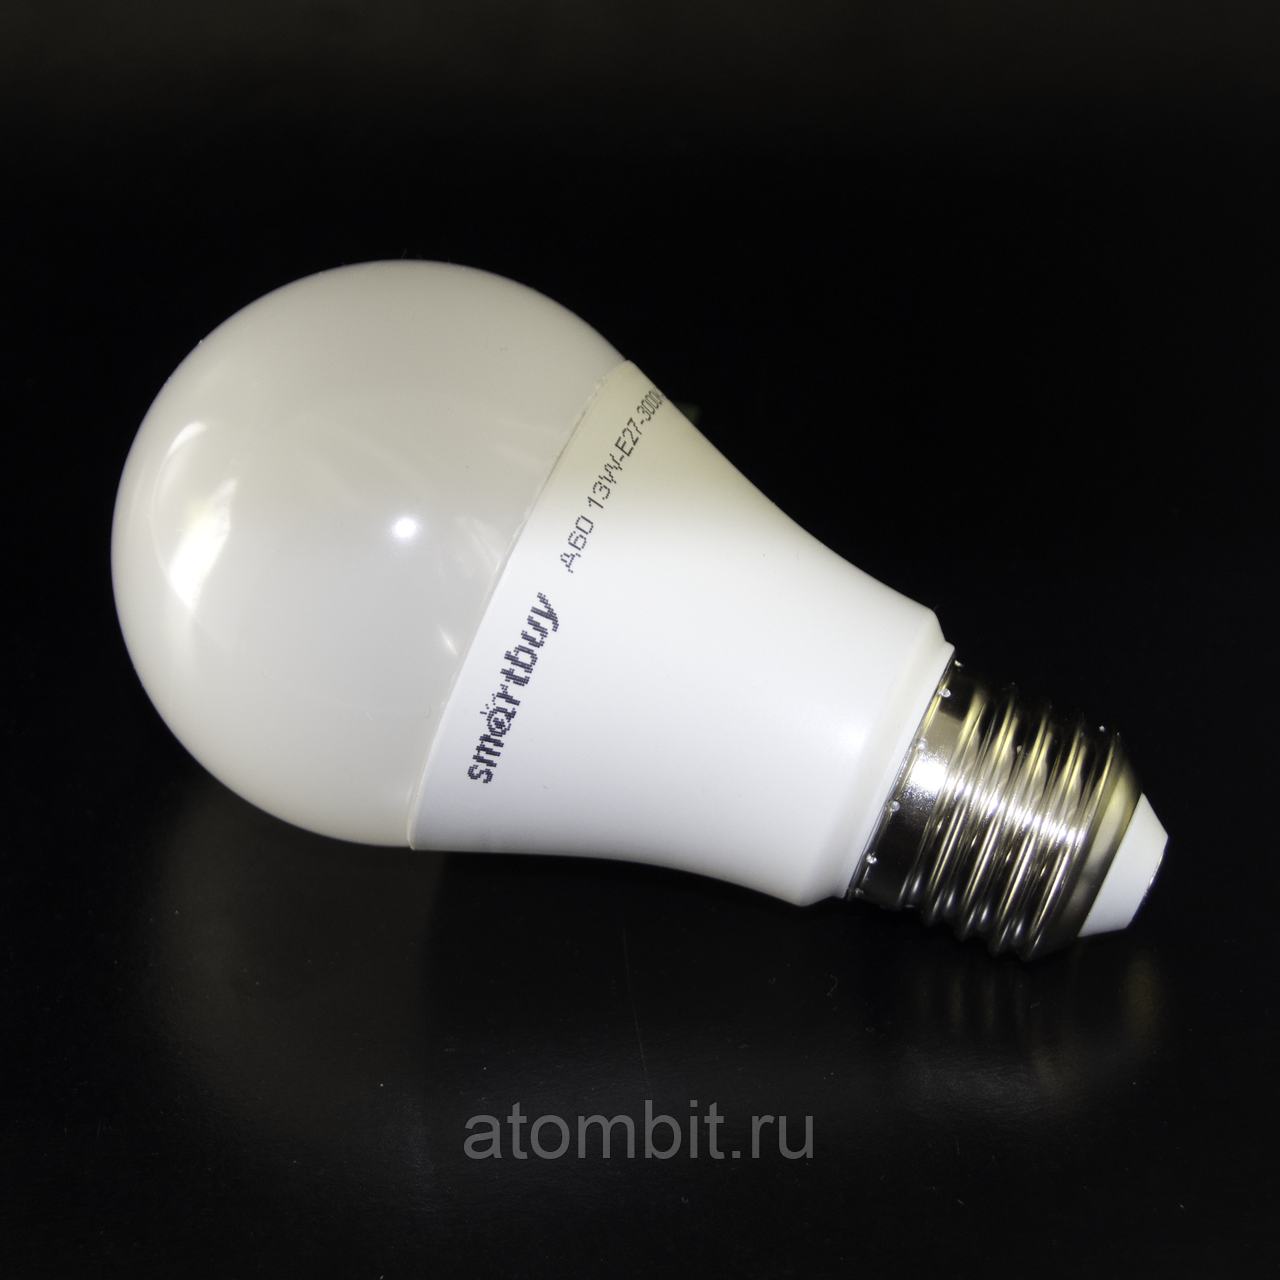 Smartbuy - производители светодиодных ламп - led свет